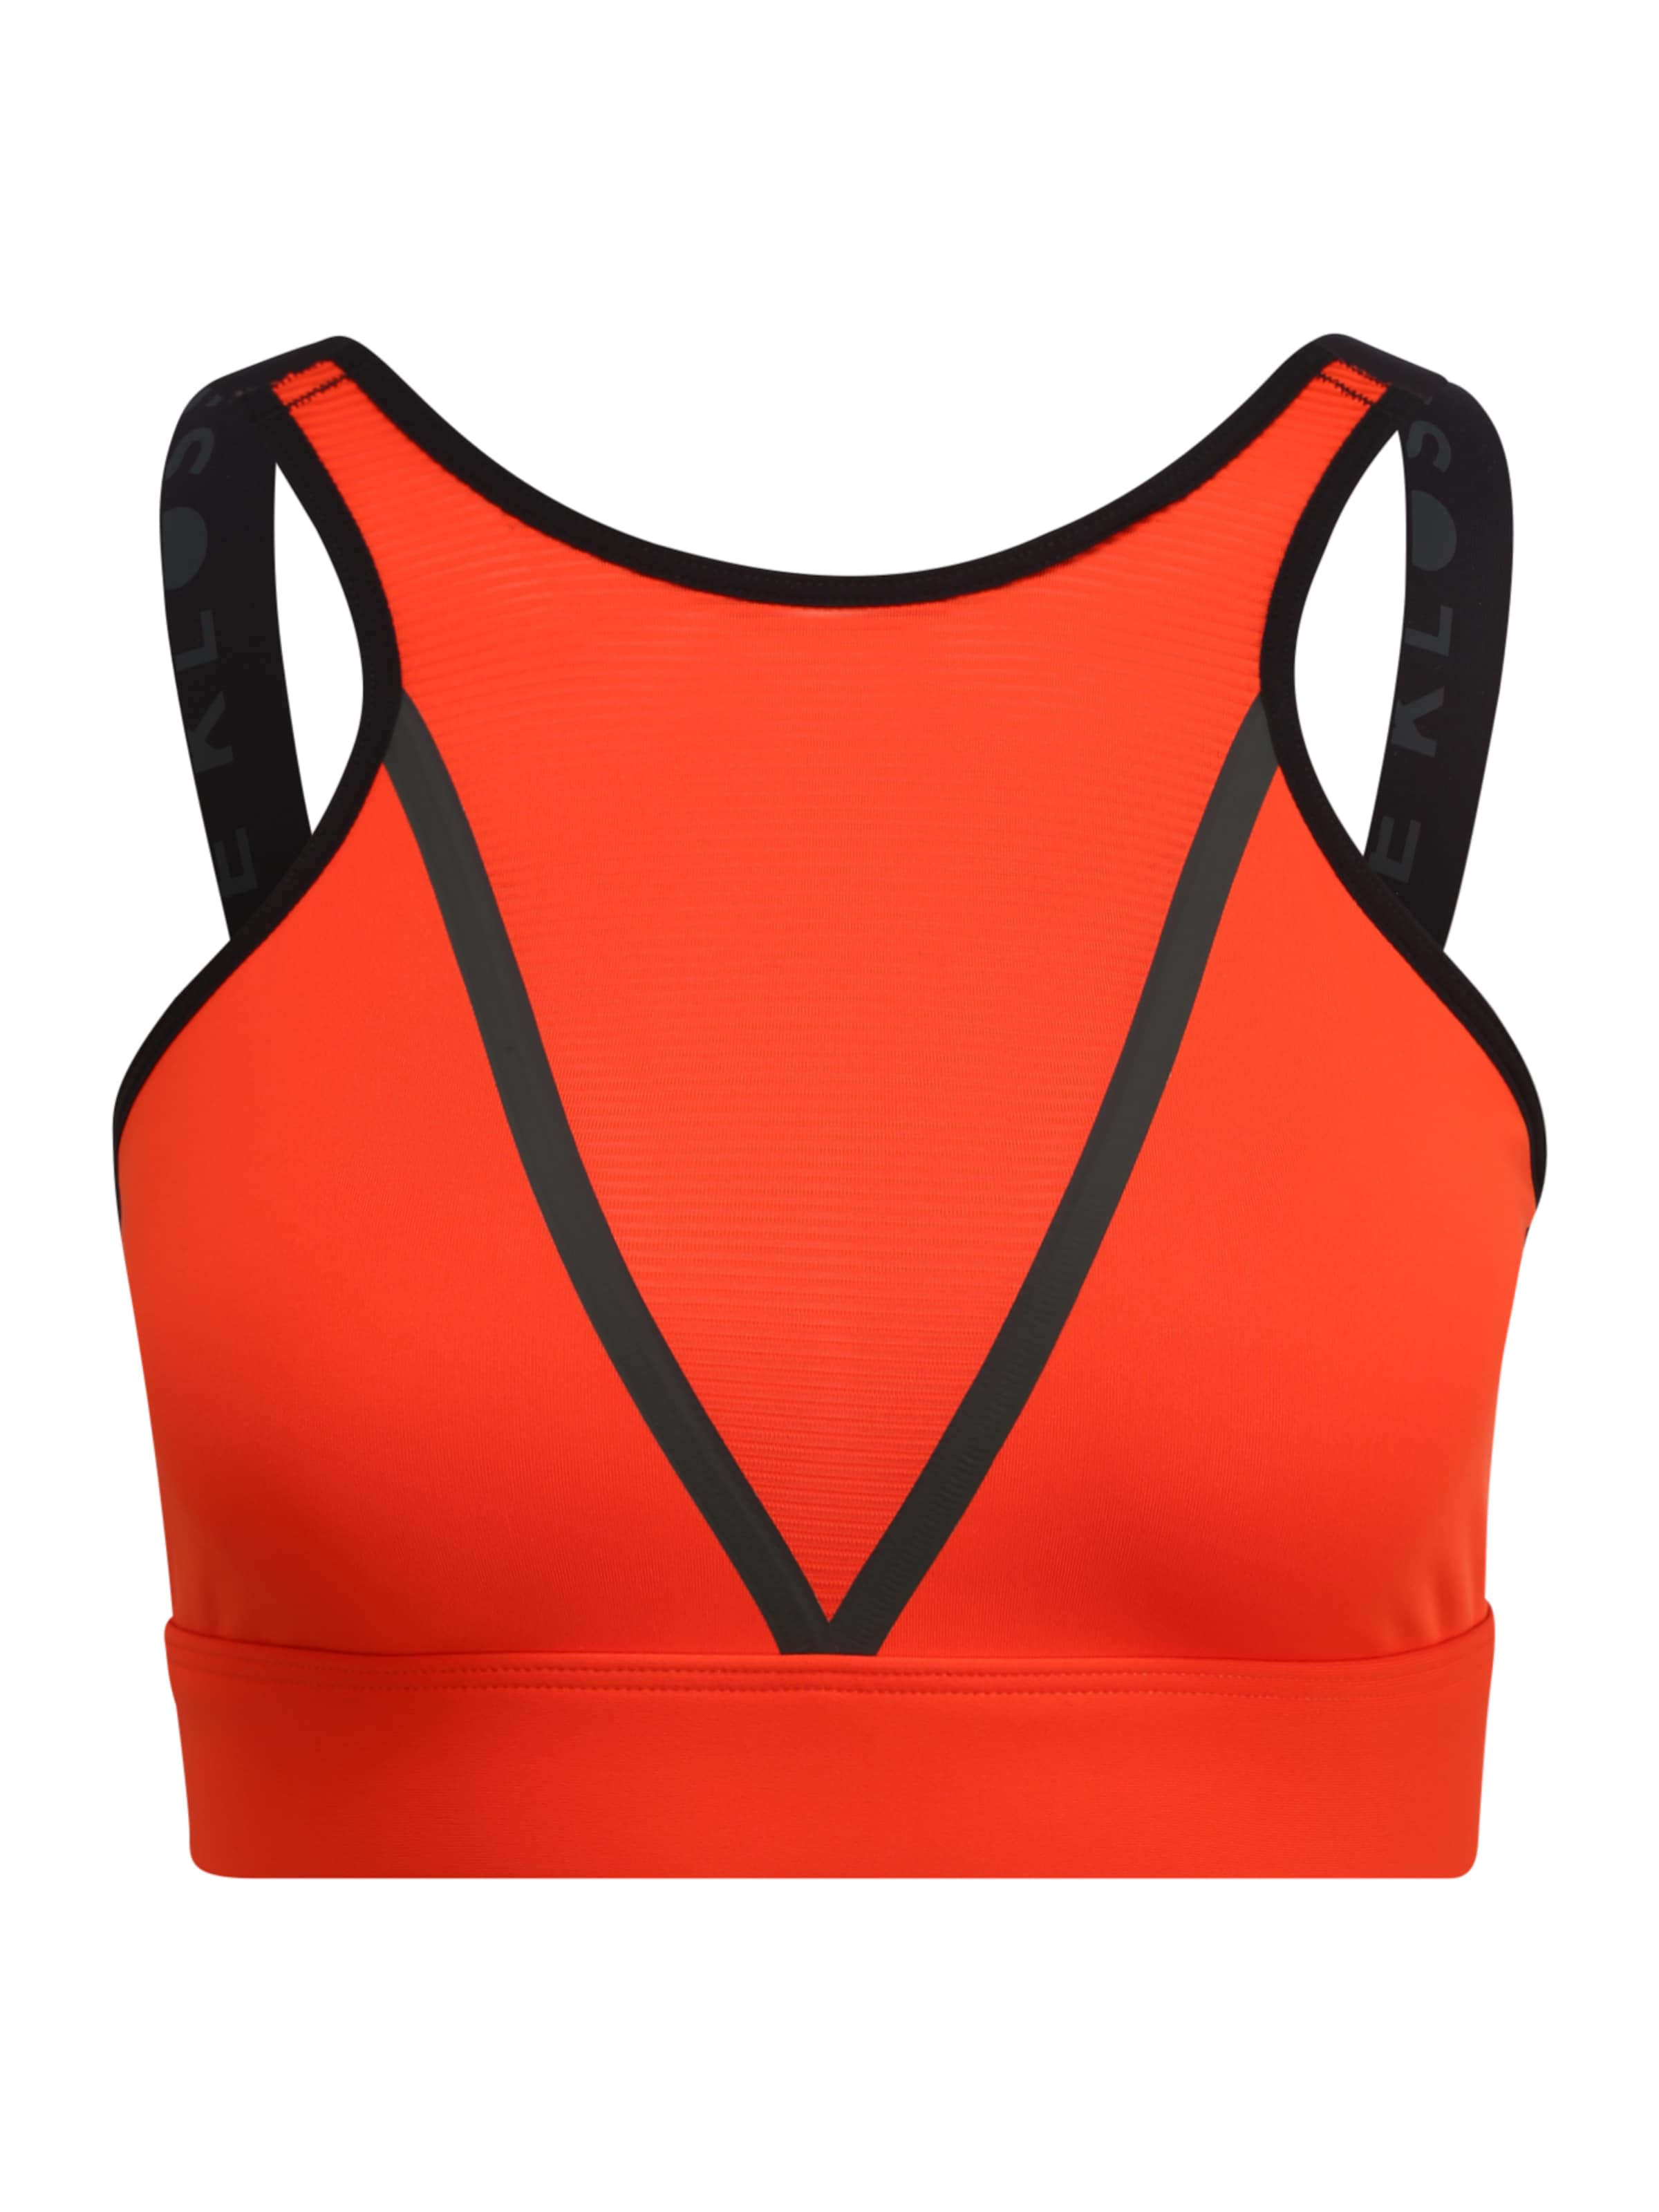 Abbigliamento Donna ADIDAS PERFORMANCE Reggiseno sportivo Karlie Kloss in Arancione Scuro, Arancione Neon 